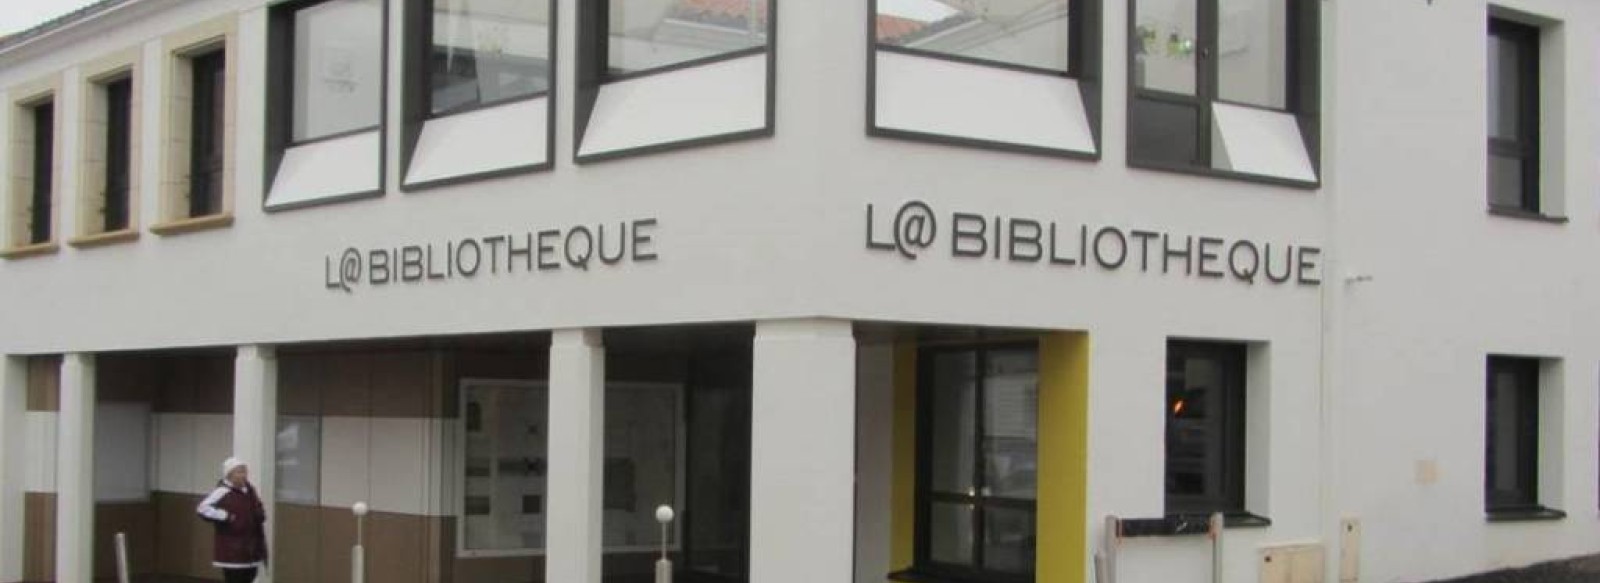 BIBLIOTHEQUE DE SAINT GILLES CROIX DE VIE